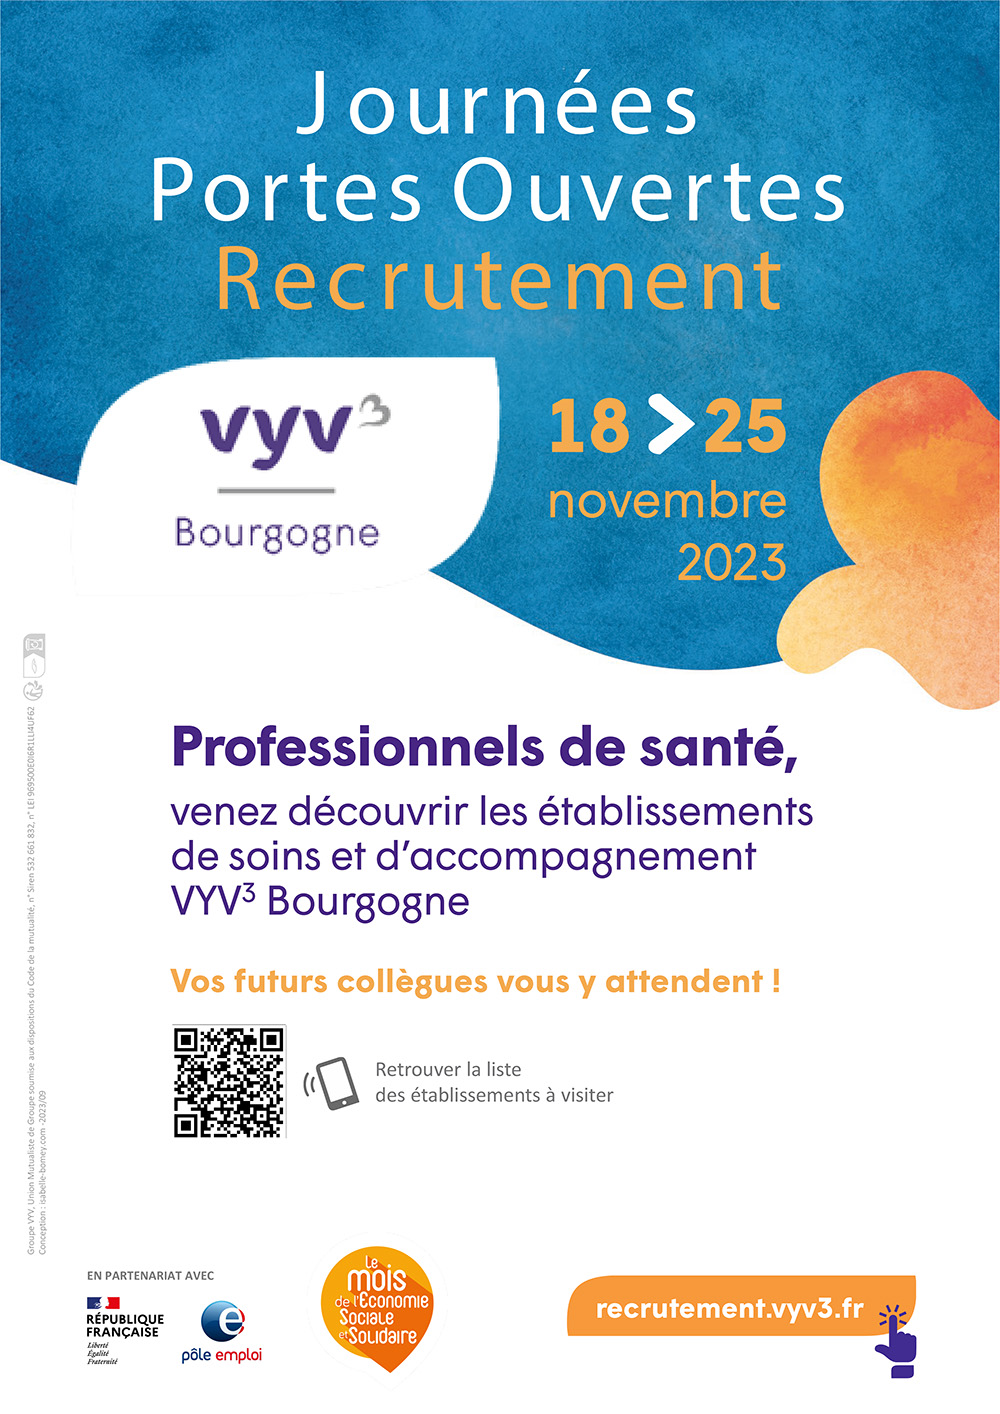 Affiche JPO recrutement Bourgogne